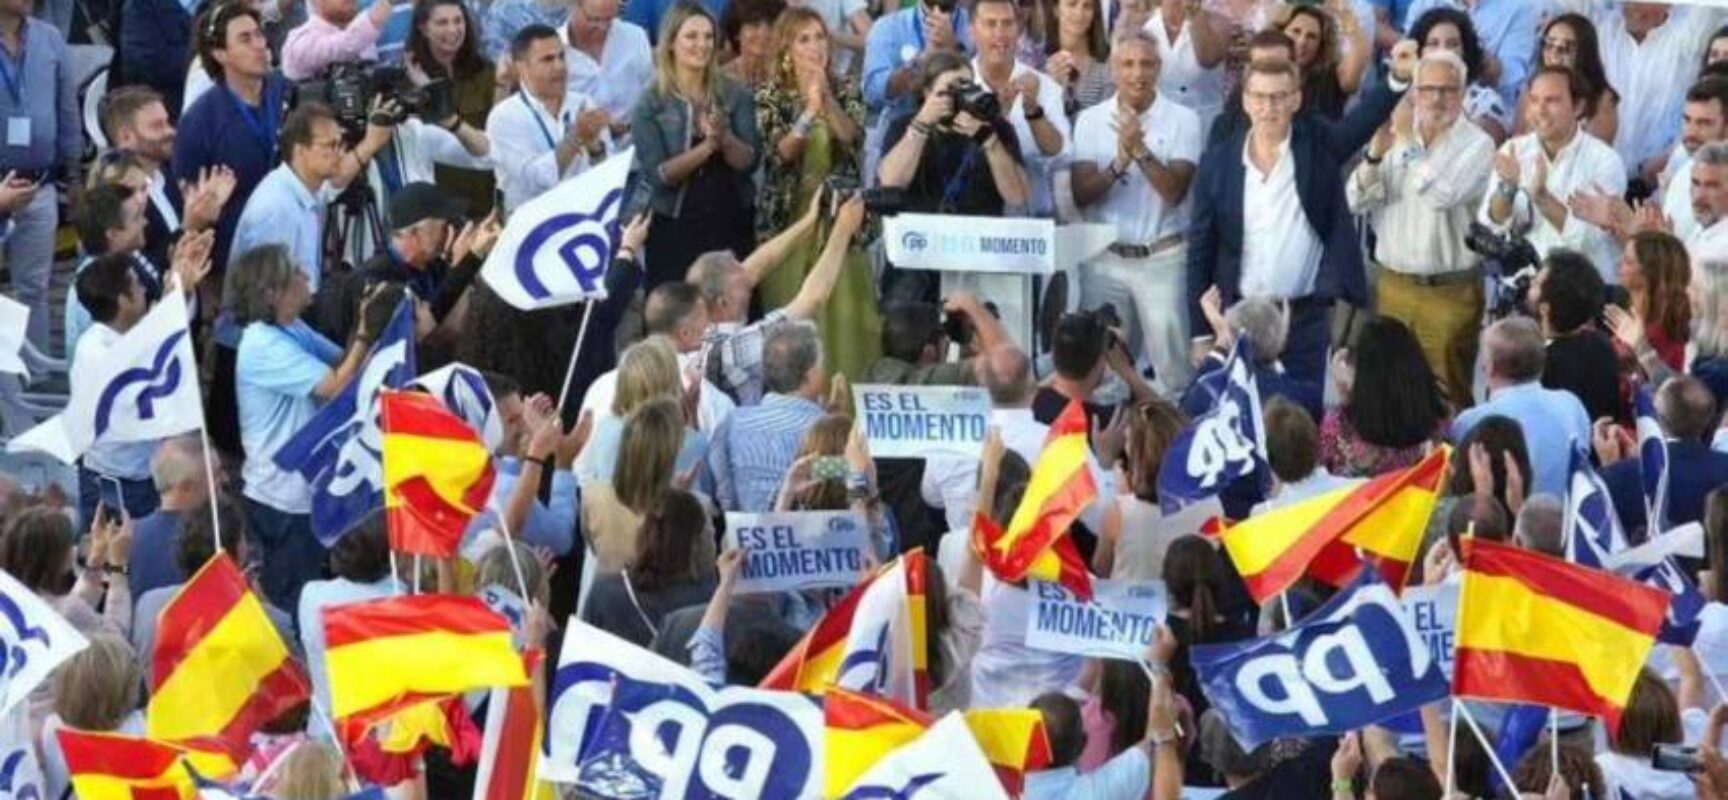 Partido Popular vence as eleições na Espanha